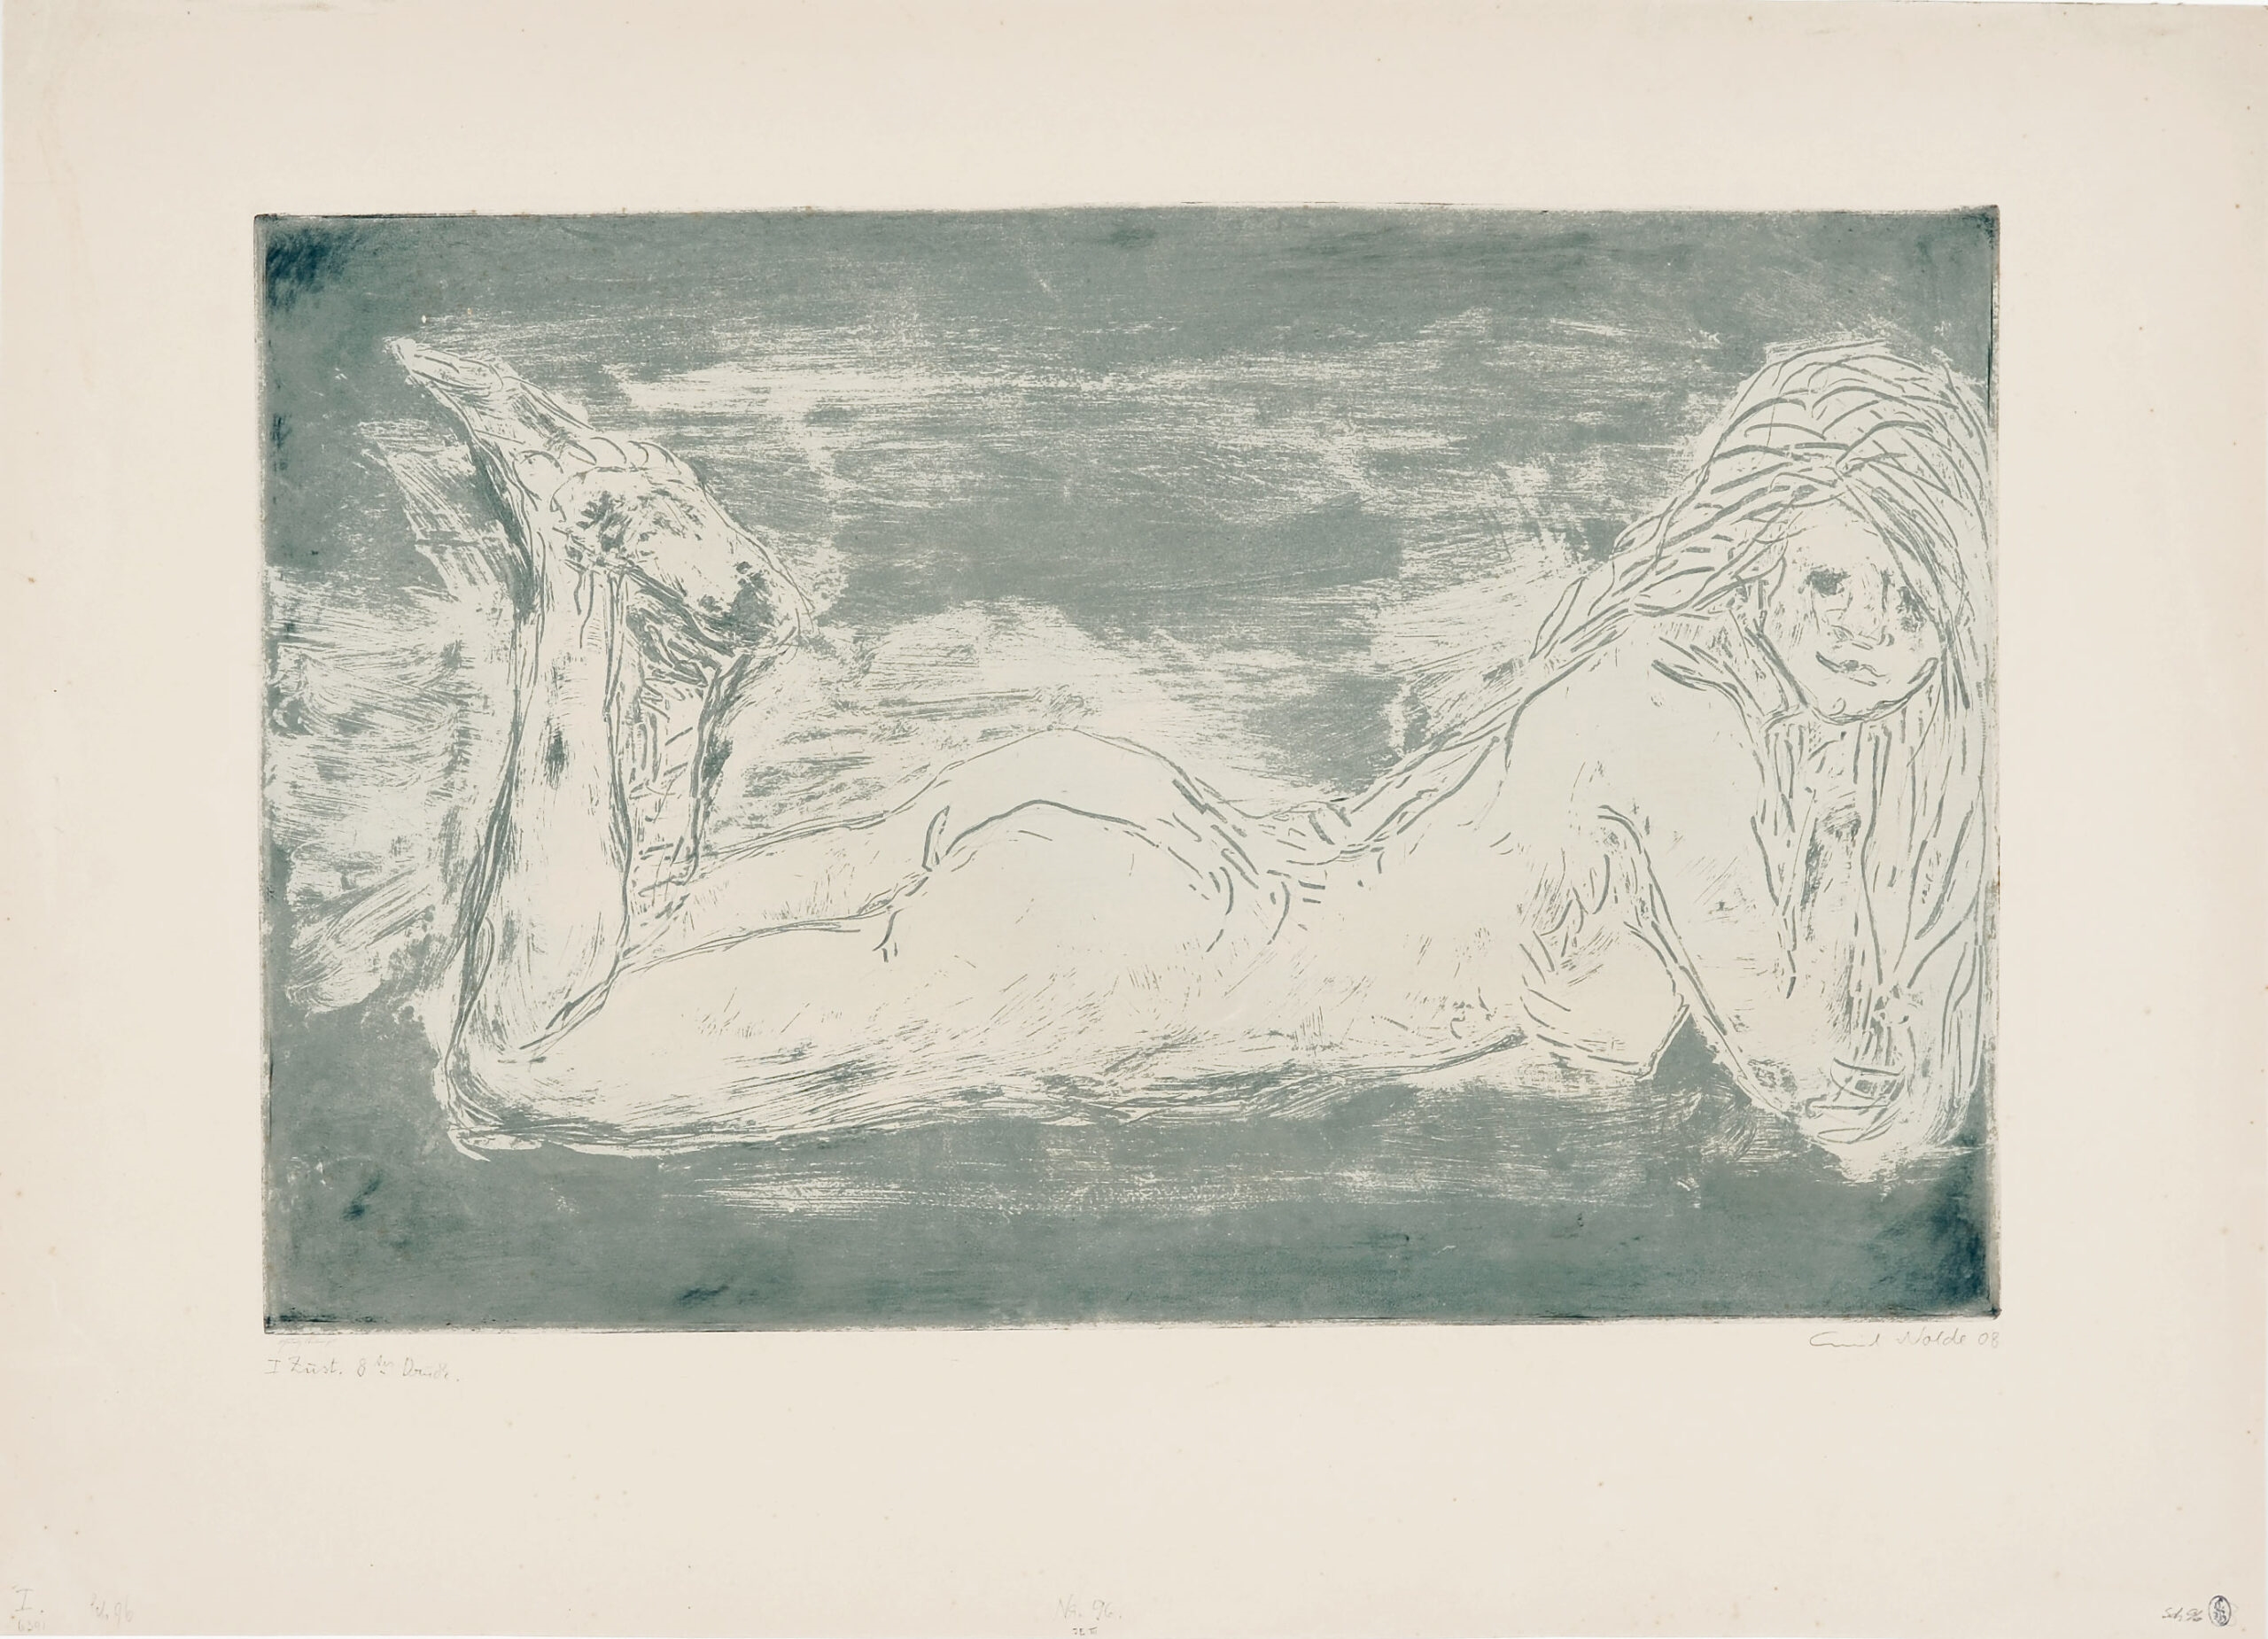 Akt mit wippenden Beinen. Radierung in Blaugrün auf chamoisfarbenem Karton. 1908. 31 x 47,6 (45 x 62,3) cm, unter Passepartout - Emil Nolde